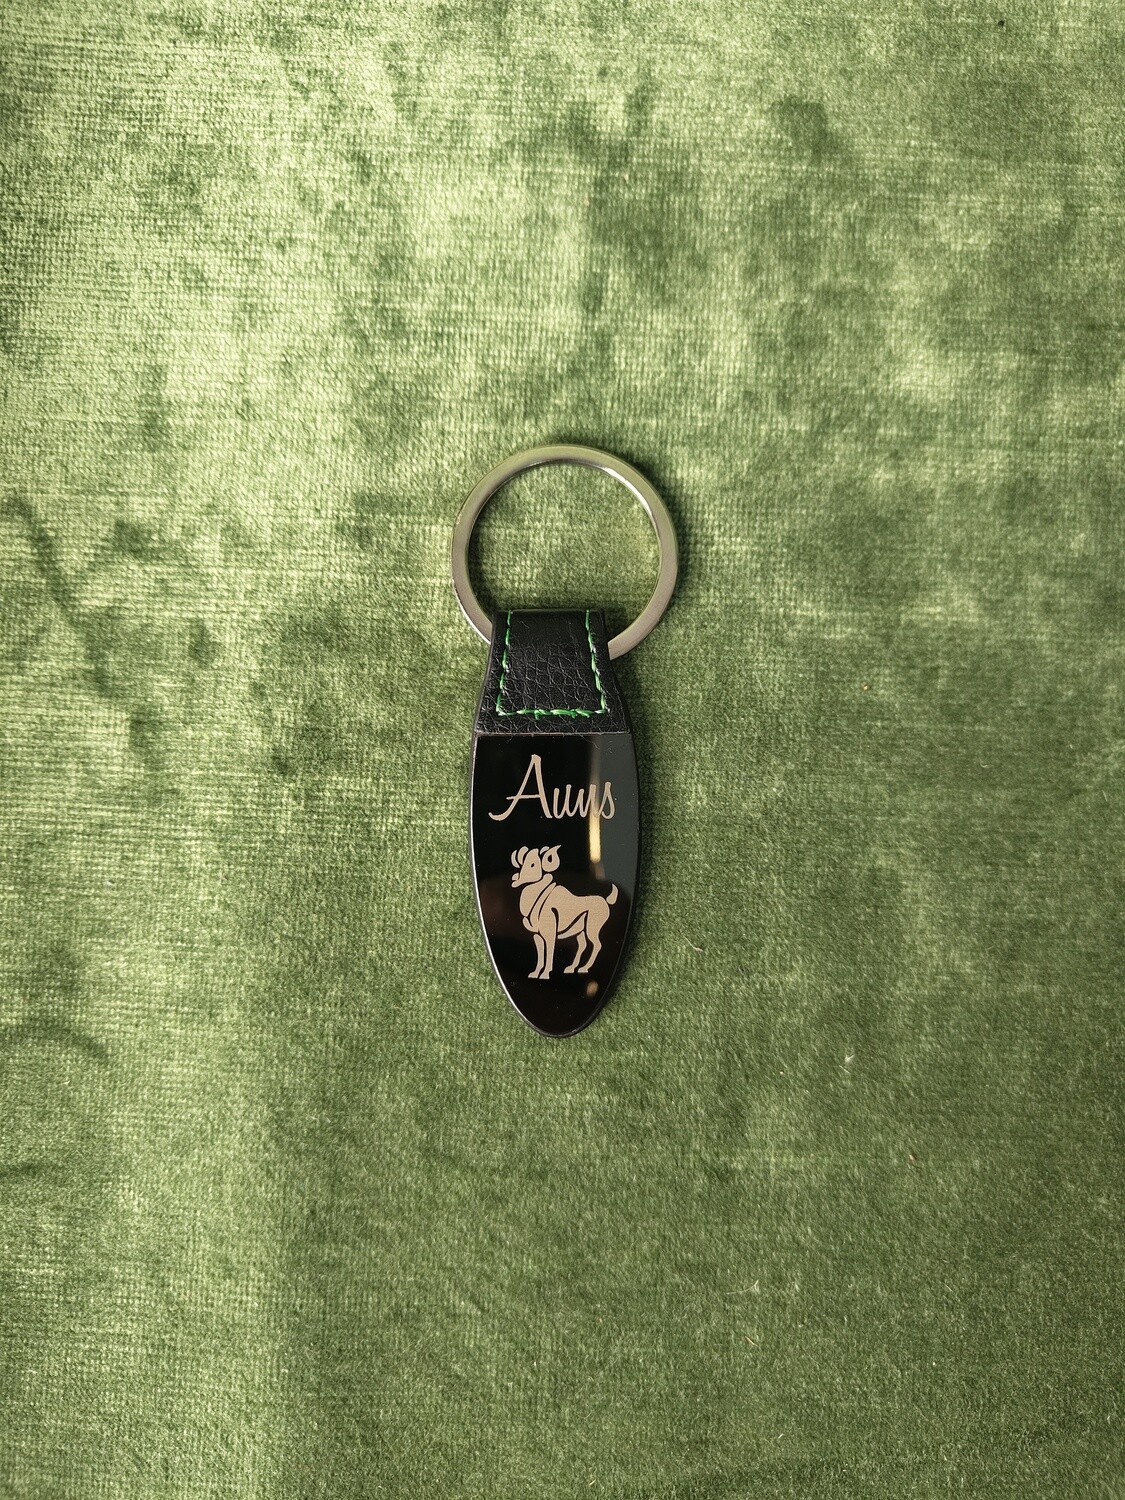 Metāla atslēgu piekariņš ar gravējumu "auns"